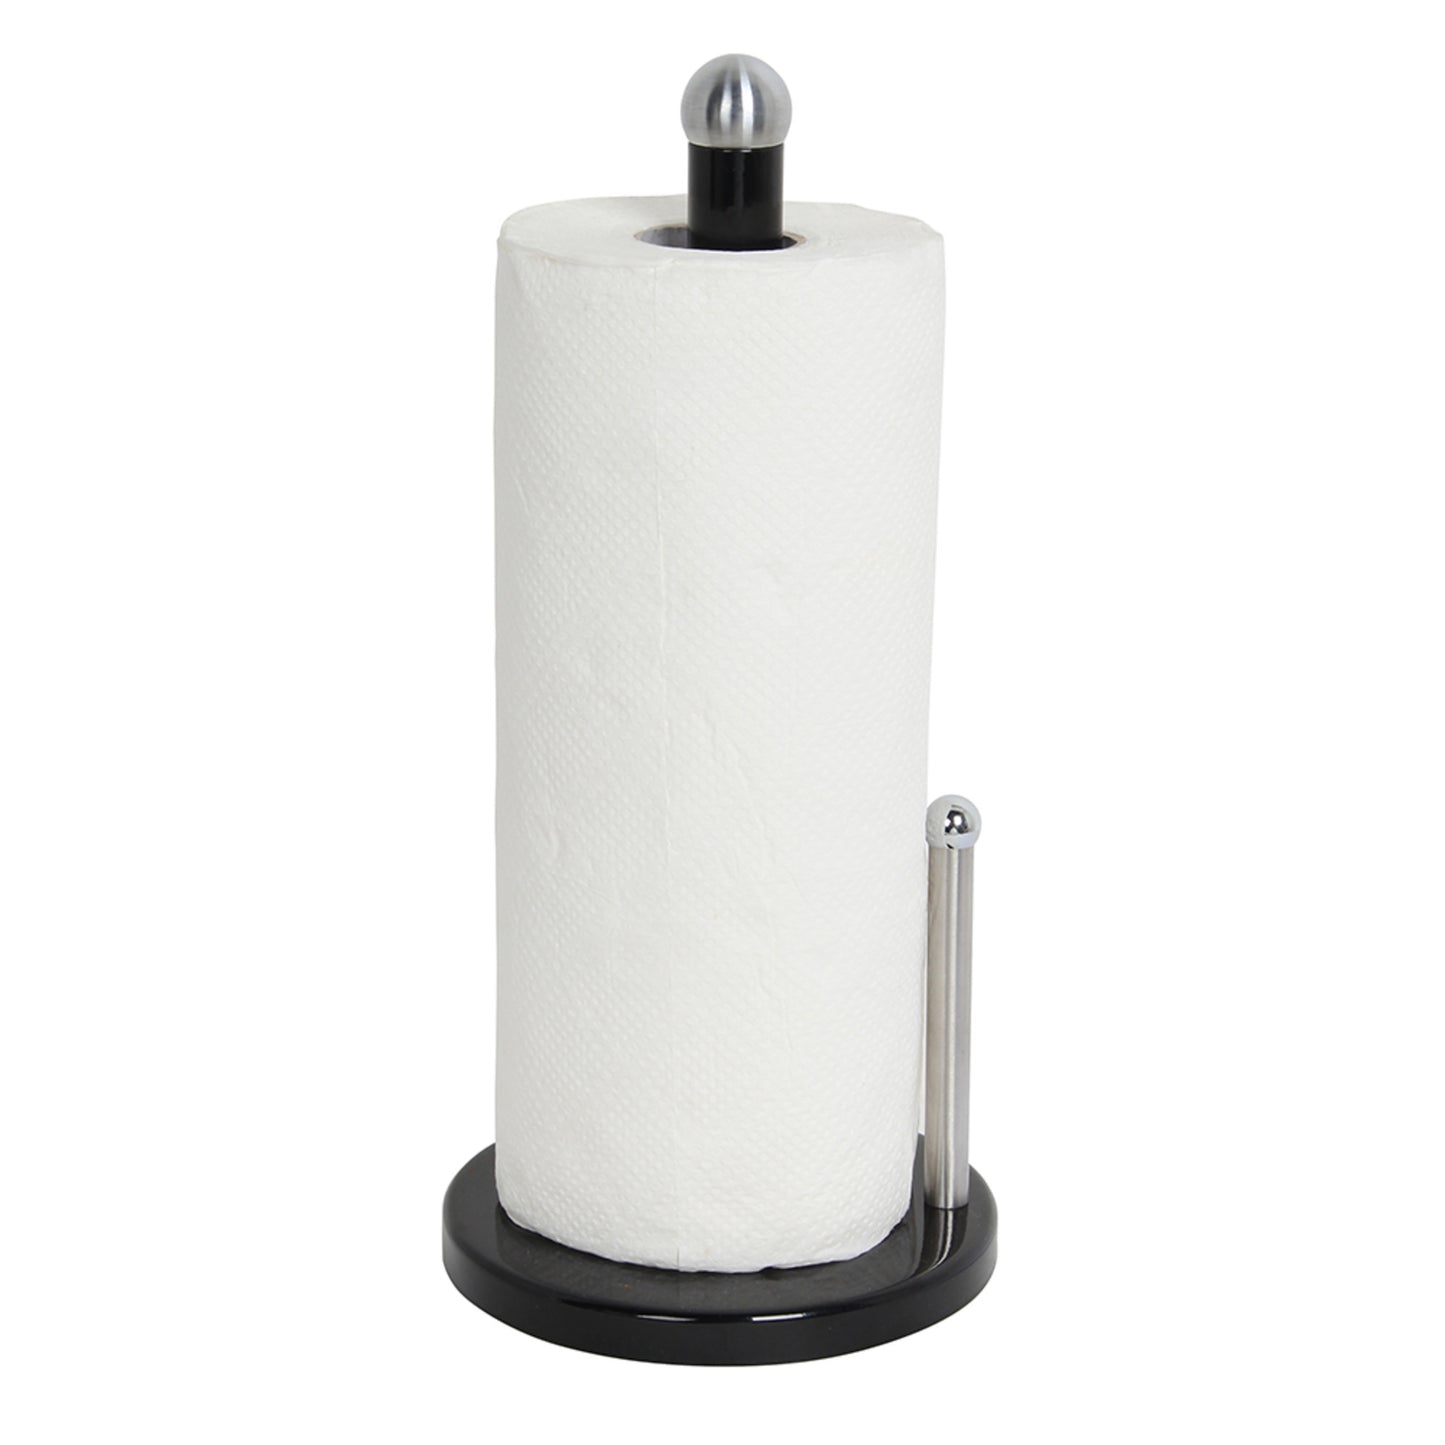 Home Basics Enamel Coated Steel Paper Towel Holder, Black - Black